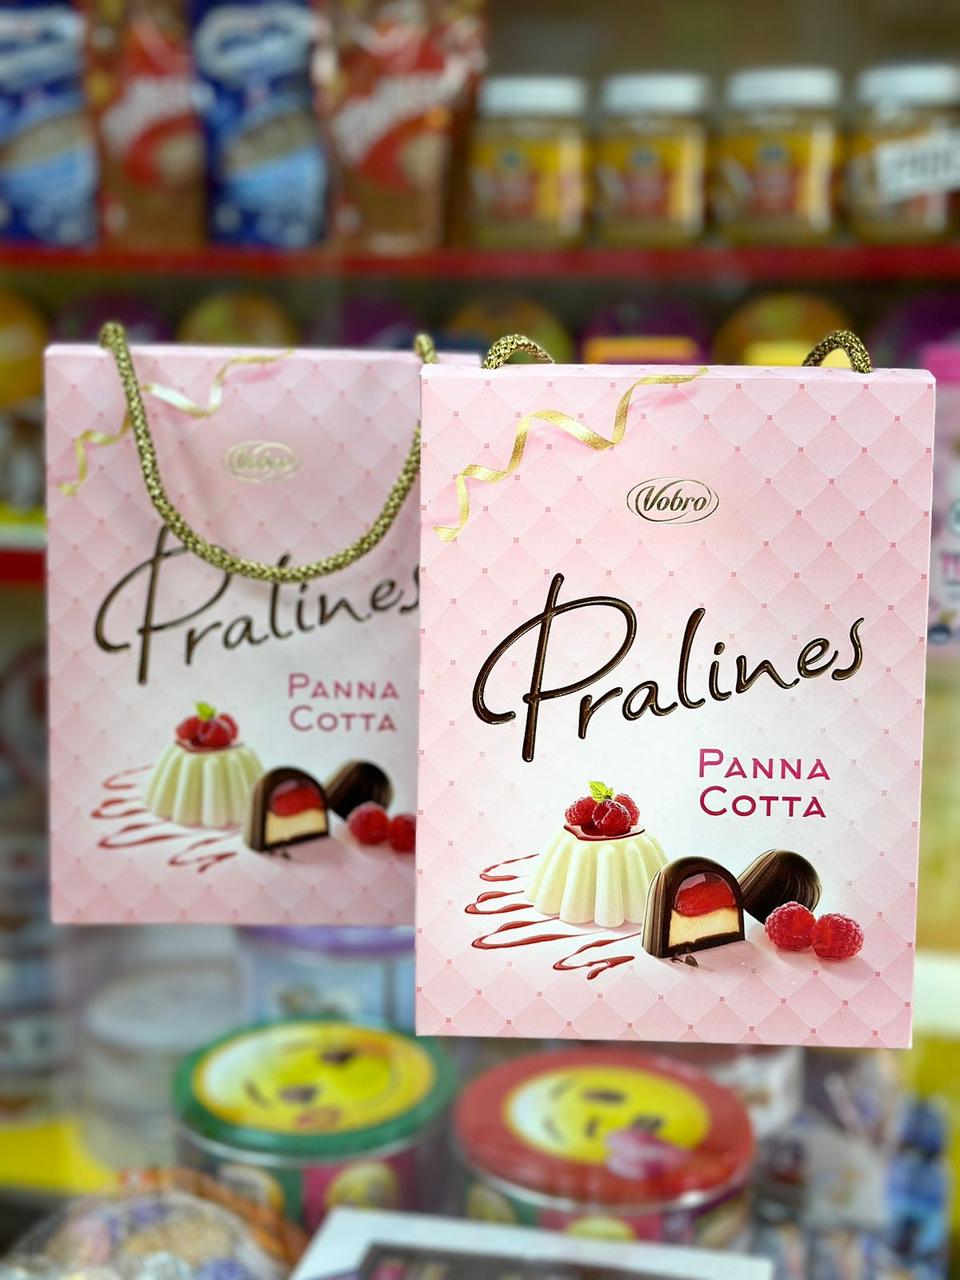 Шоколадные Конфеты с малиной Vobro Pralines Panna Cotta 190 гр